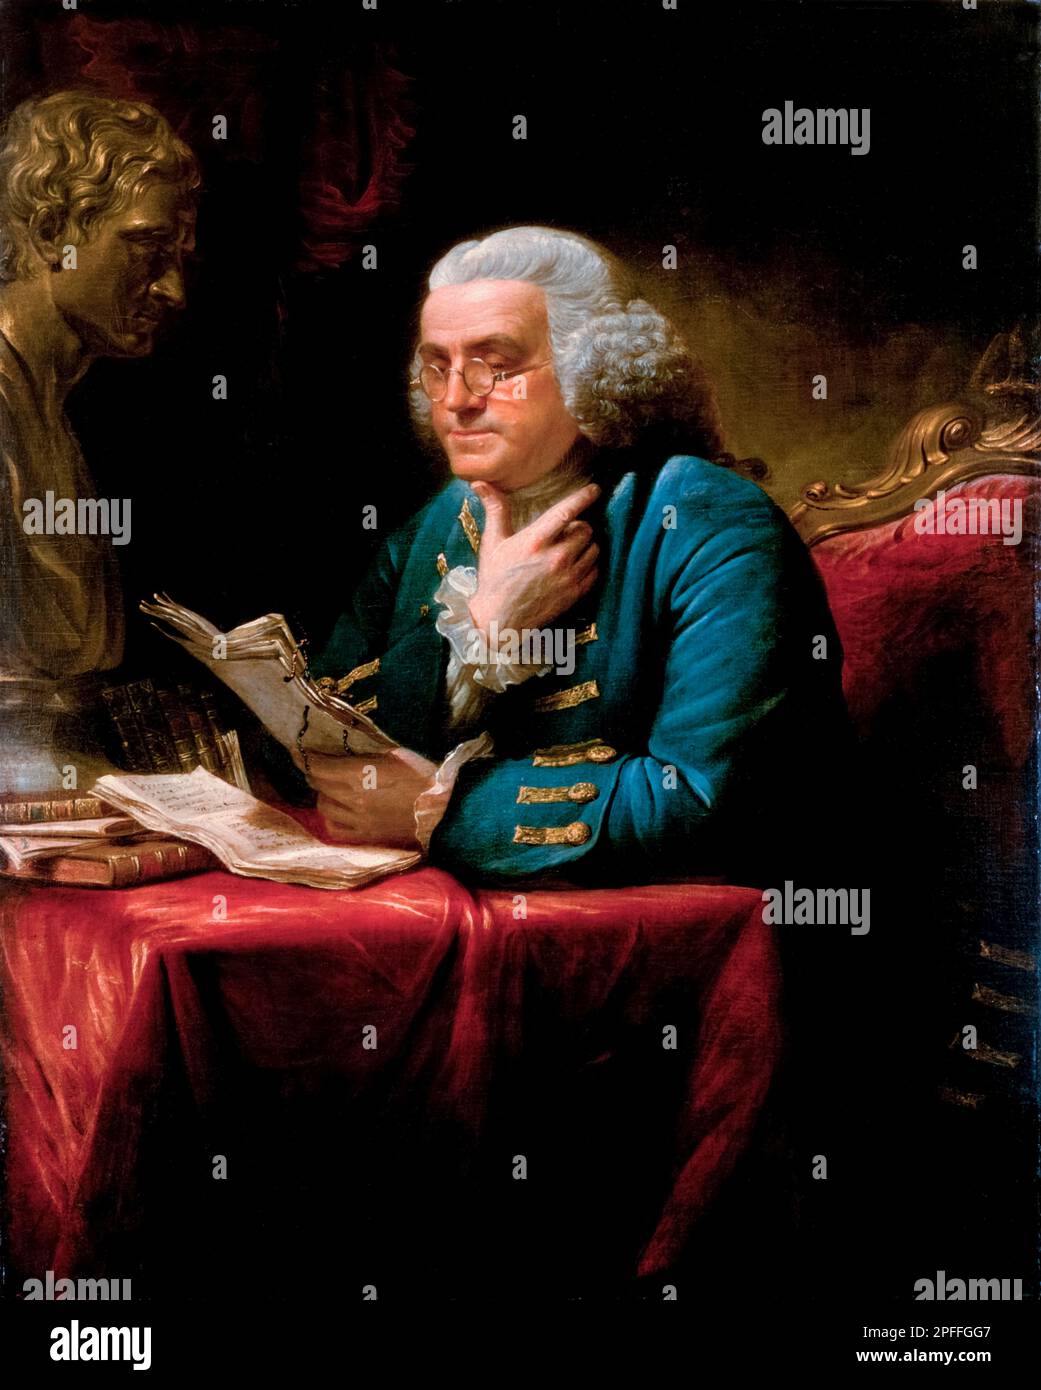 Benjamin Franklin (1706-1790), amerikanische Polymathematik, Schriftsteller, Wissenschaftler, Erfinder, Und Staatsmann. Einer der Gründerväter der Vereinigten Staaten, Porträt in Öl auf Leinwand von David Martin, 1767 Stockfoto